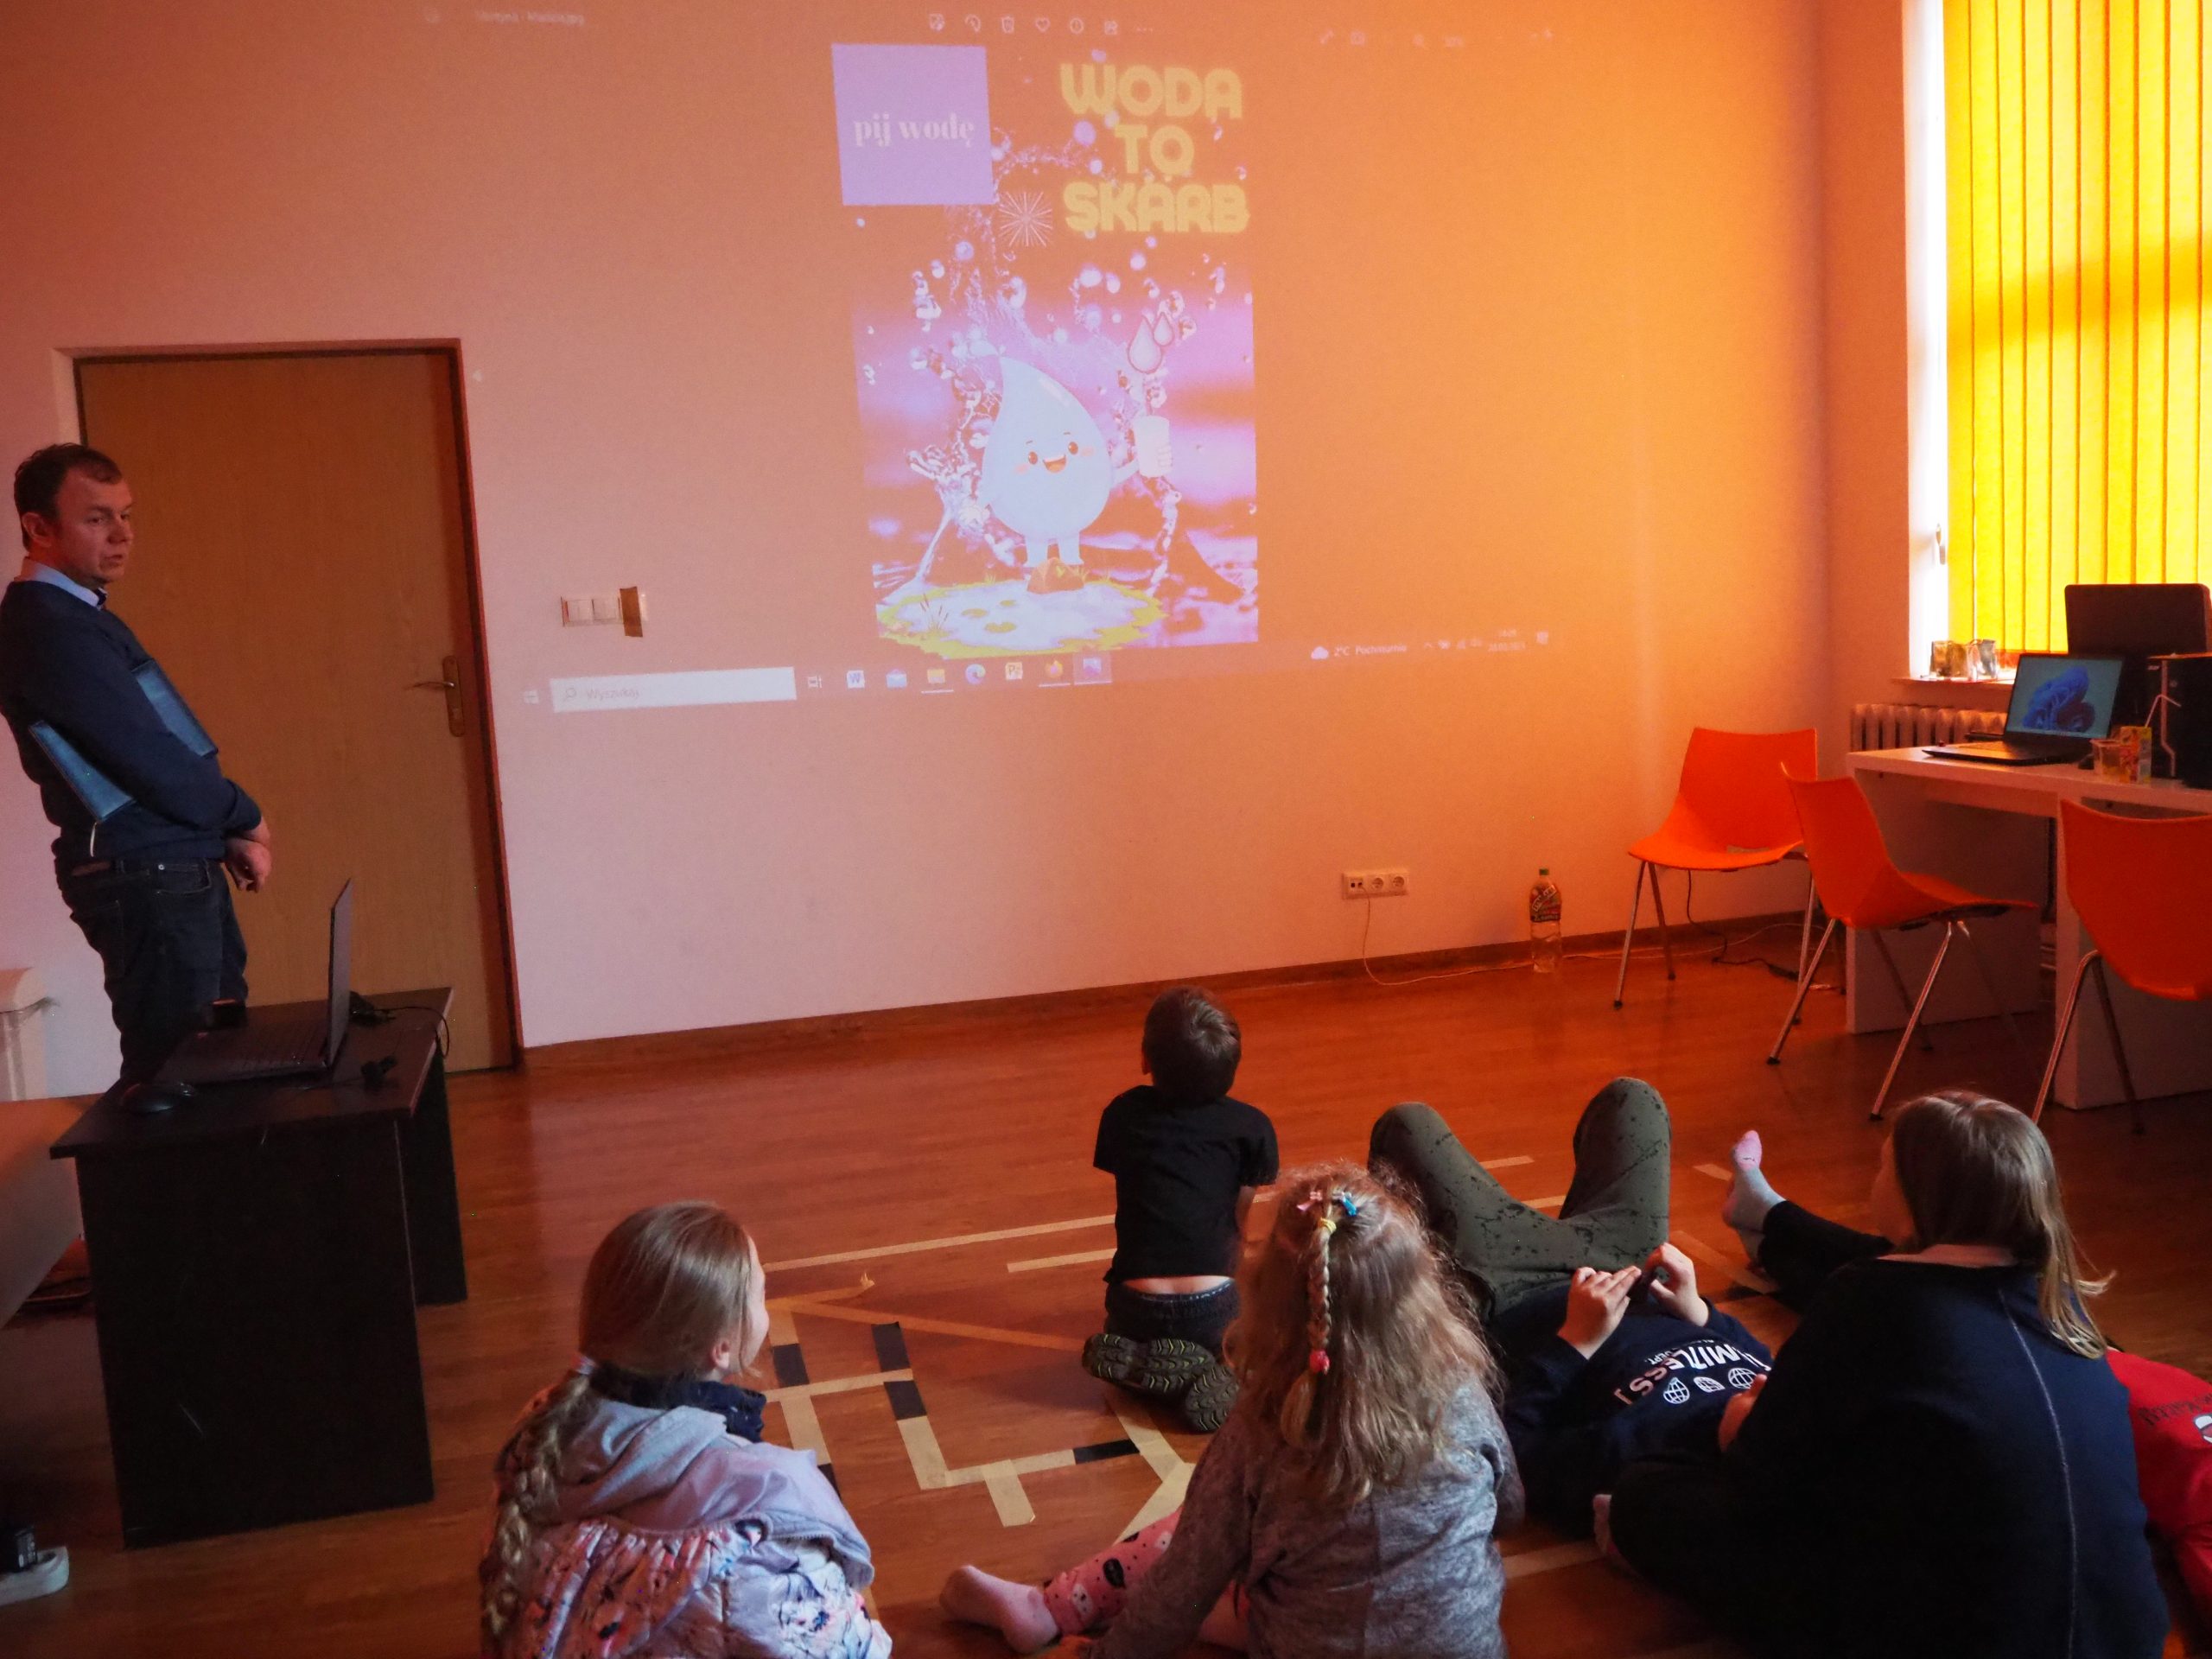 dzieci siedzą na podłodze i oglądają prezentacje wyświetlaną z projektora na ścianie, z lewej strony stoi mężczyzna